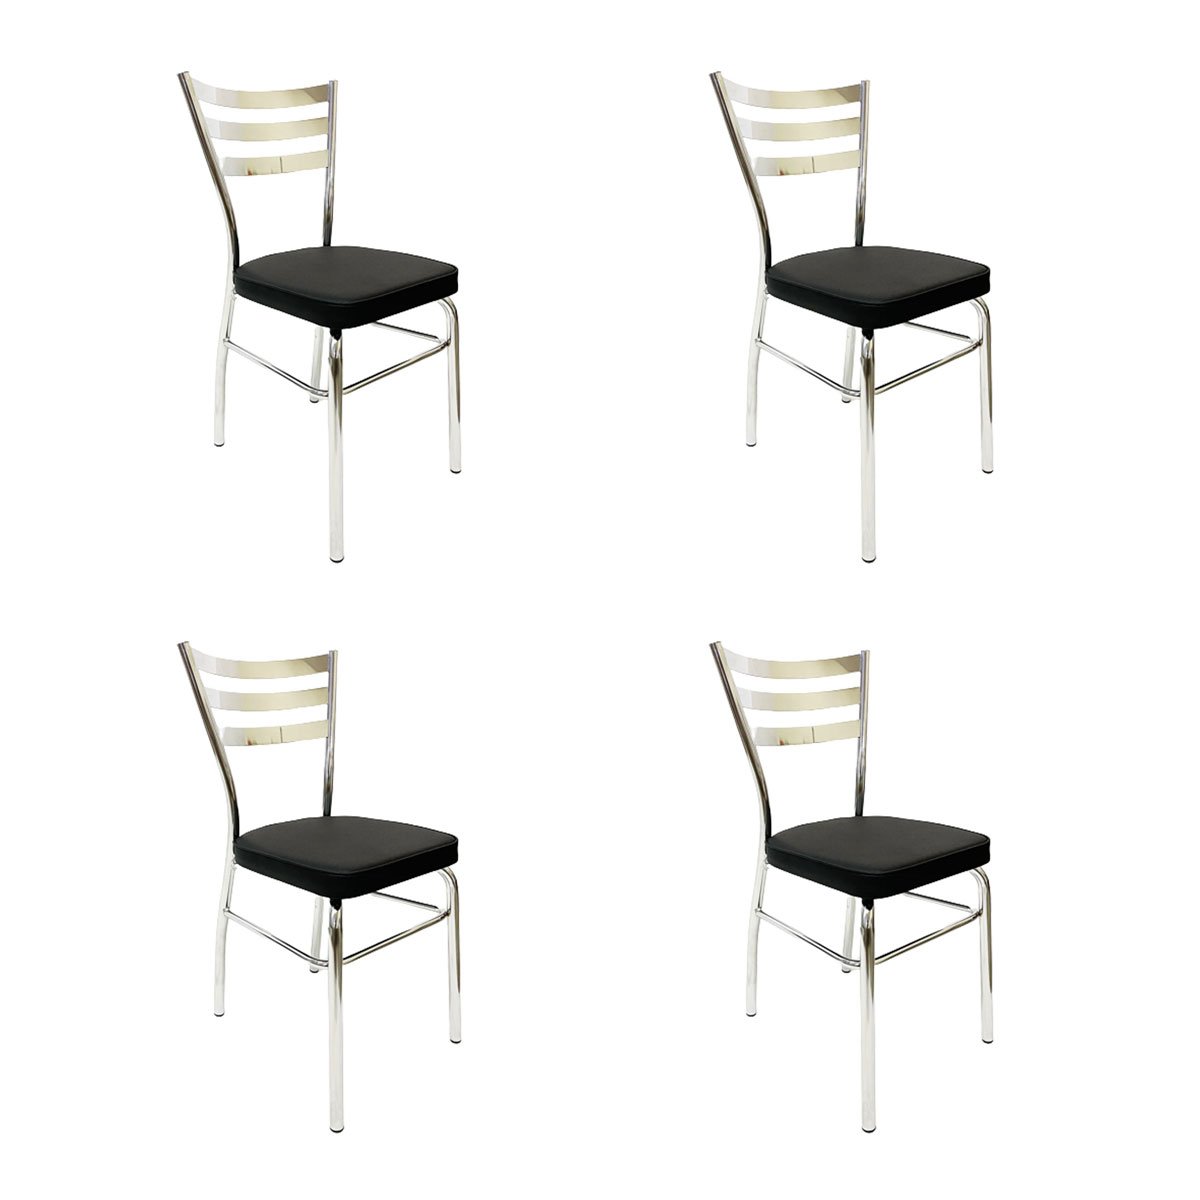 Kit 4 Cadeiras de Cozinha com Reforço Cromada Assento Grosso Preto - Poltronas do Sul